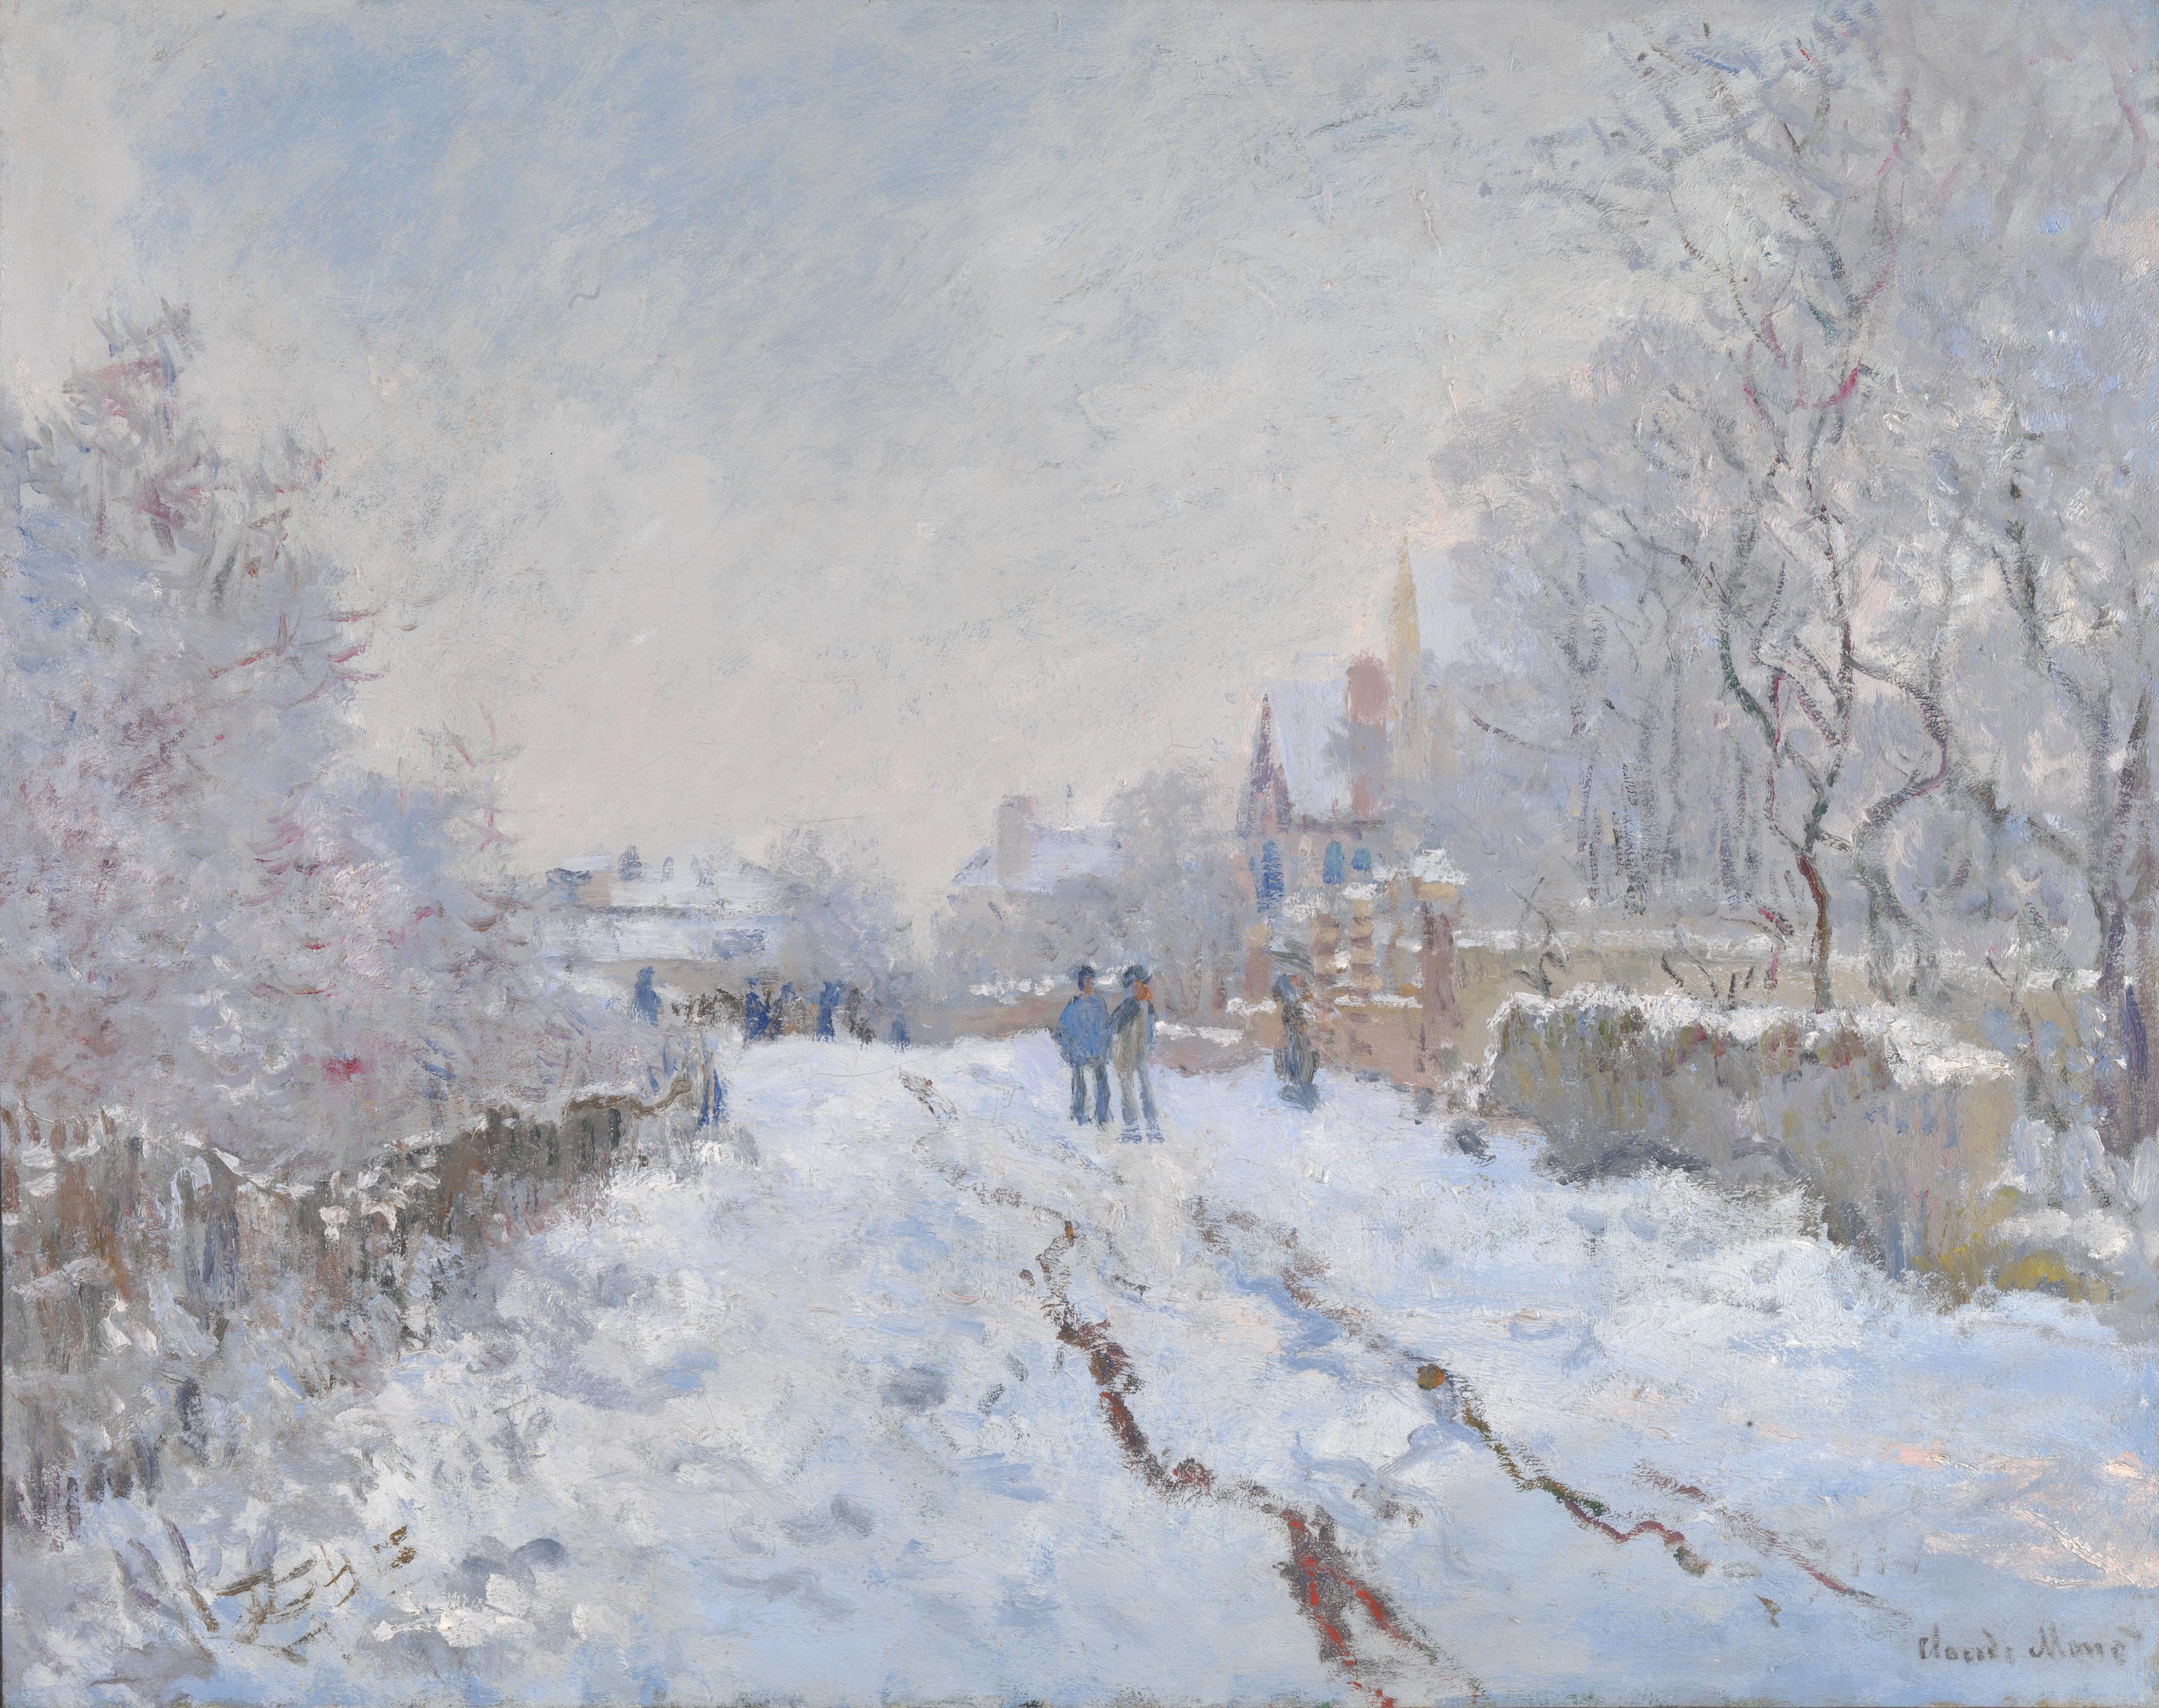 Śnieg w Argenteuil by Claude Monet - 1875 - 71.1 x 91.4 cm 